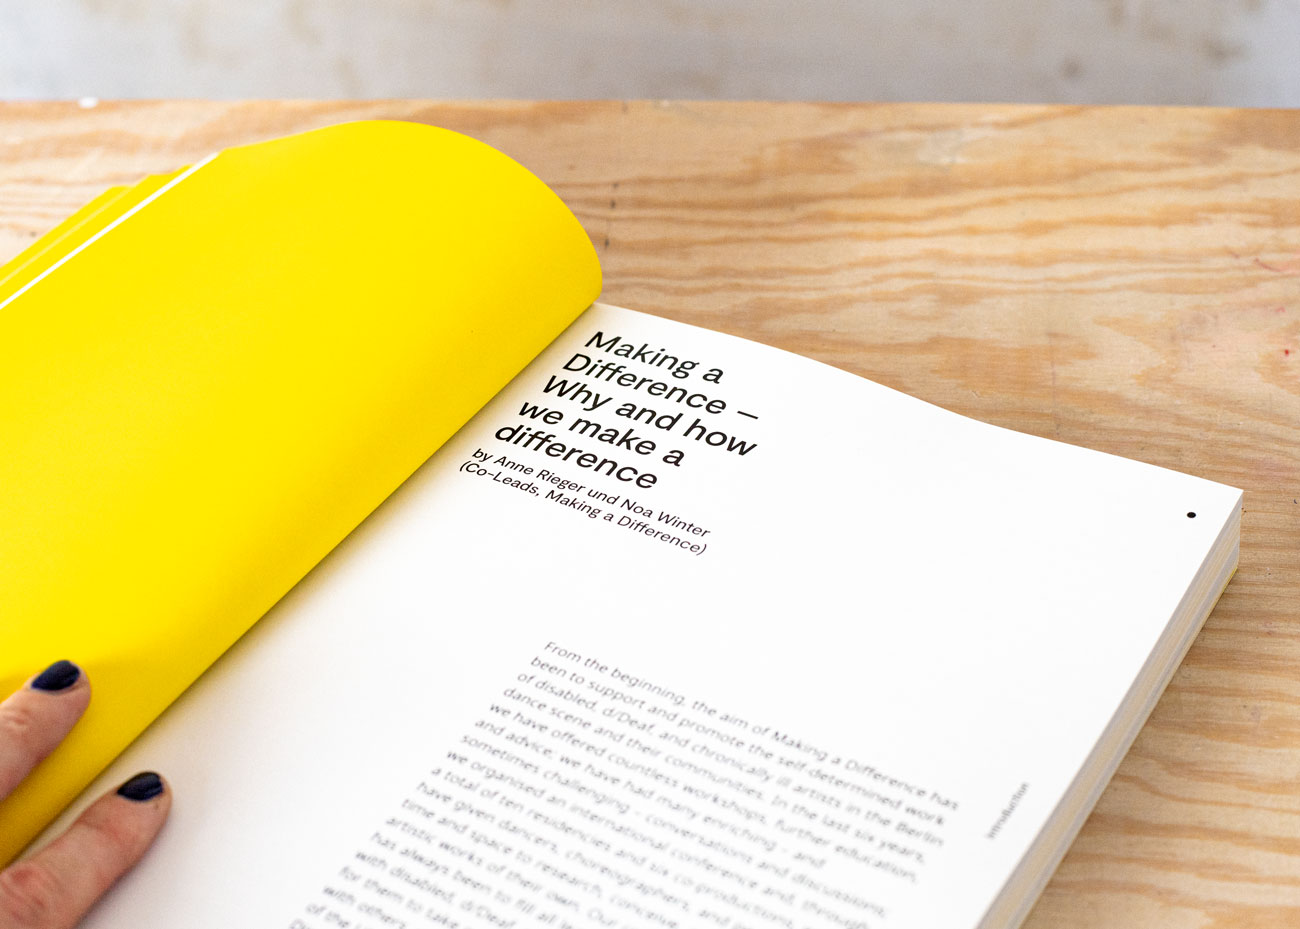 Detailaufnahme einer Doppelseite des Buchs auf hellem Holz-Untergrund. Die linke Seite ist komplett Gelb. Darauf liegt eine Hand mit dunkelblau lackierten Nägeln. Auf der rechten Seite befinden sich in schwarz auf weiß die Überschrift, ein Autor*innen-Hinweis und Text.